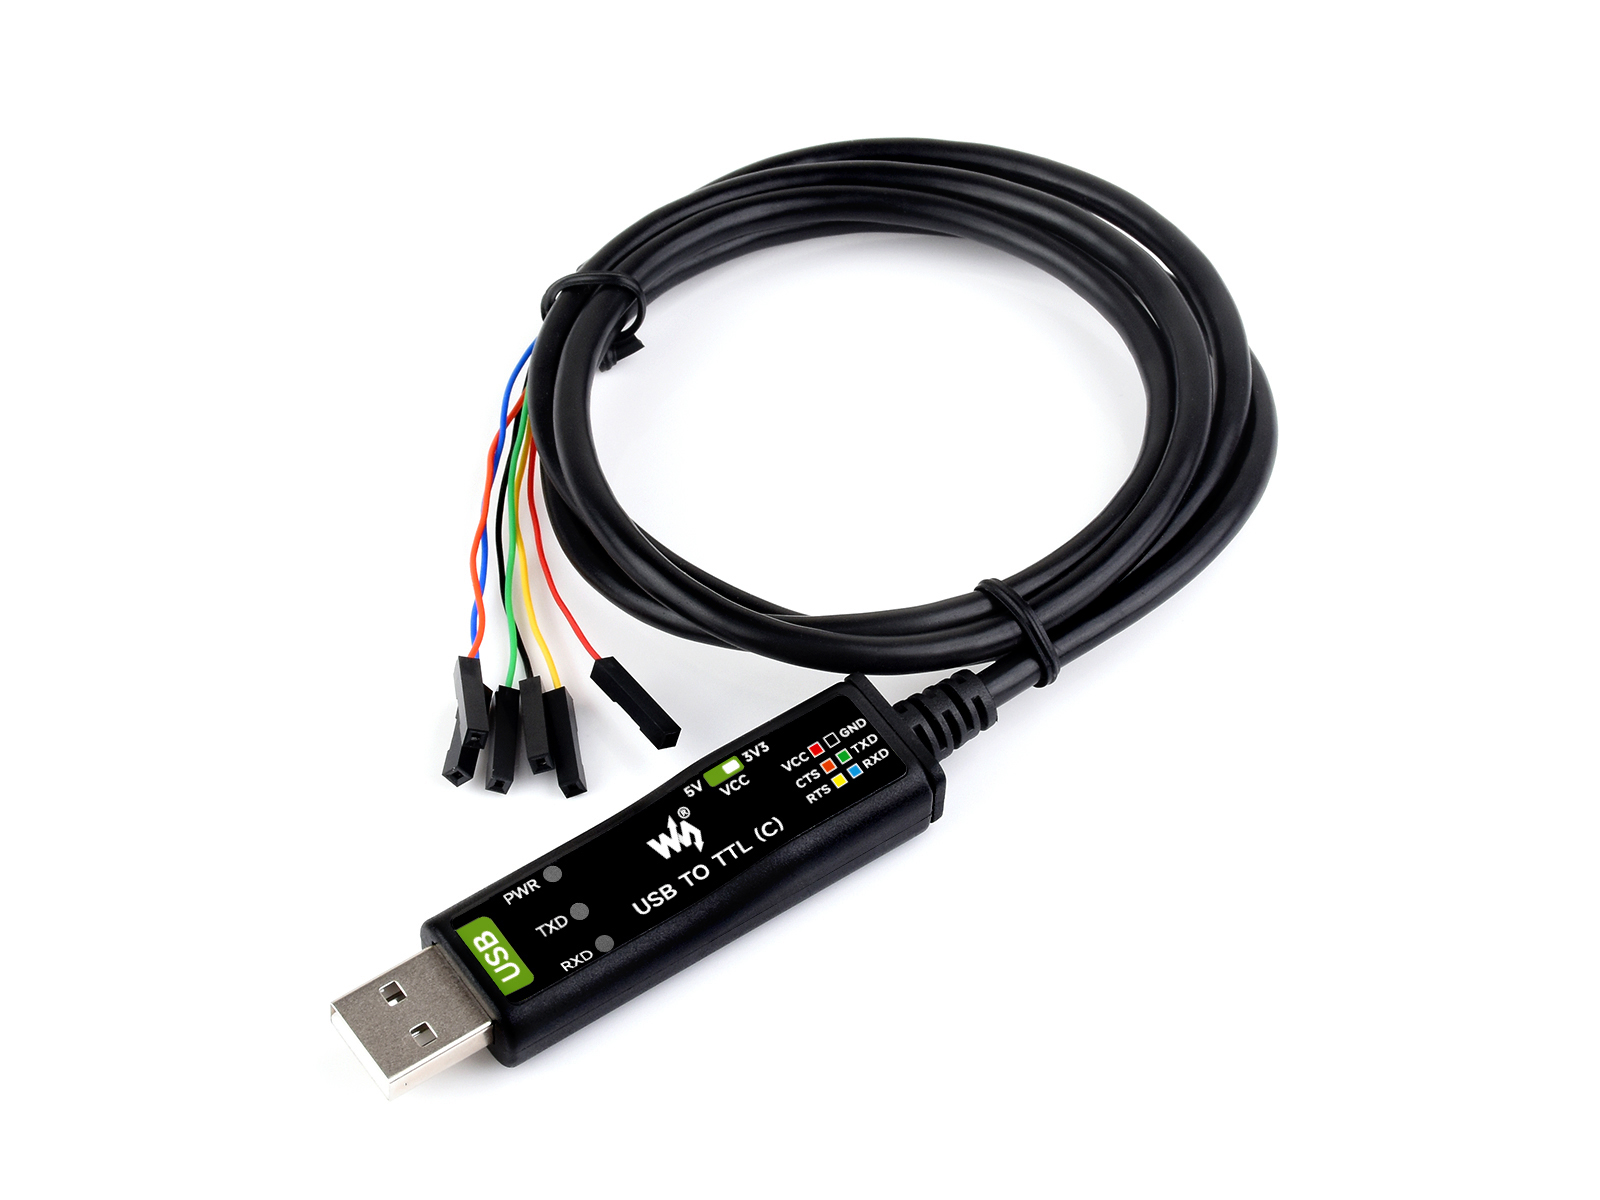 工业级USB转TTL串口线 原装FT232RNL 多种保护电路 多系统兼容 带硬件流控 串口转换线 6PIN杜邦线散头接口